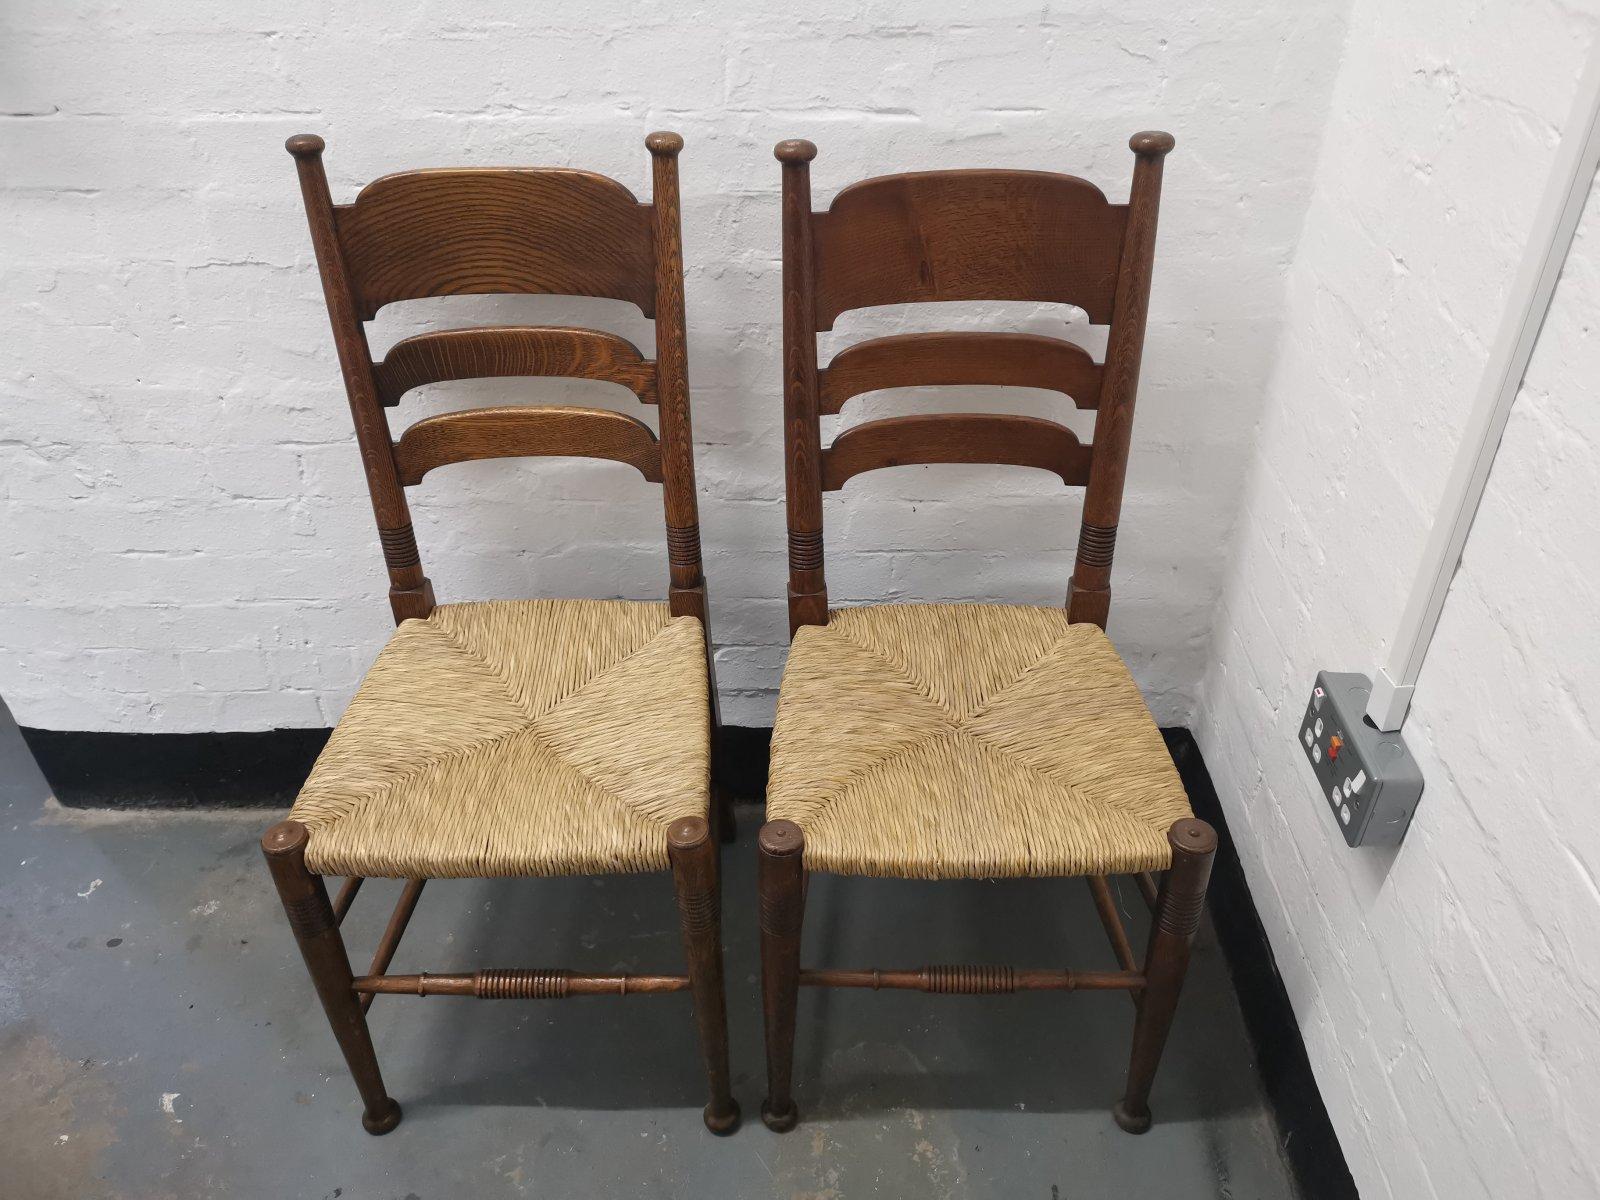 Liberty & Co. Fabriqué par William Birch
Paire de chaises de salle à manger en chêne de style Arts & Crafts anglais. 
Ces chaises ont été entièrement restaurées et leur assise a été recouverte d'un nouveau jonc posé par des professionnels. Le